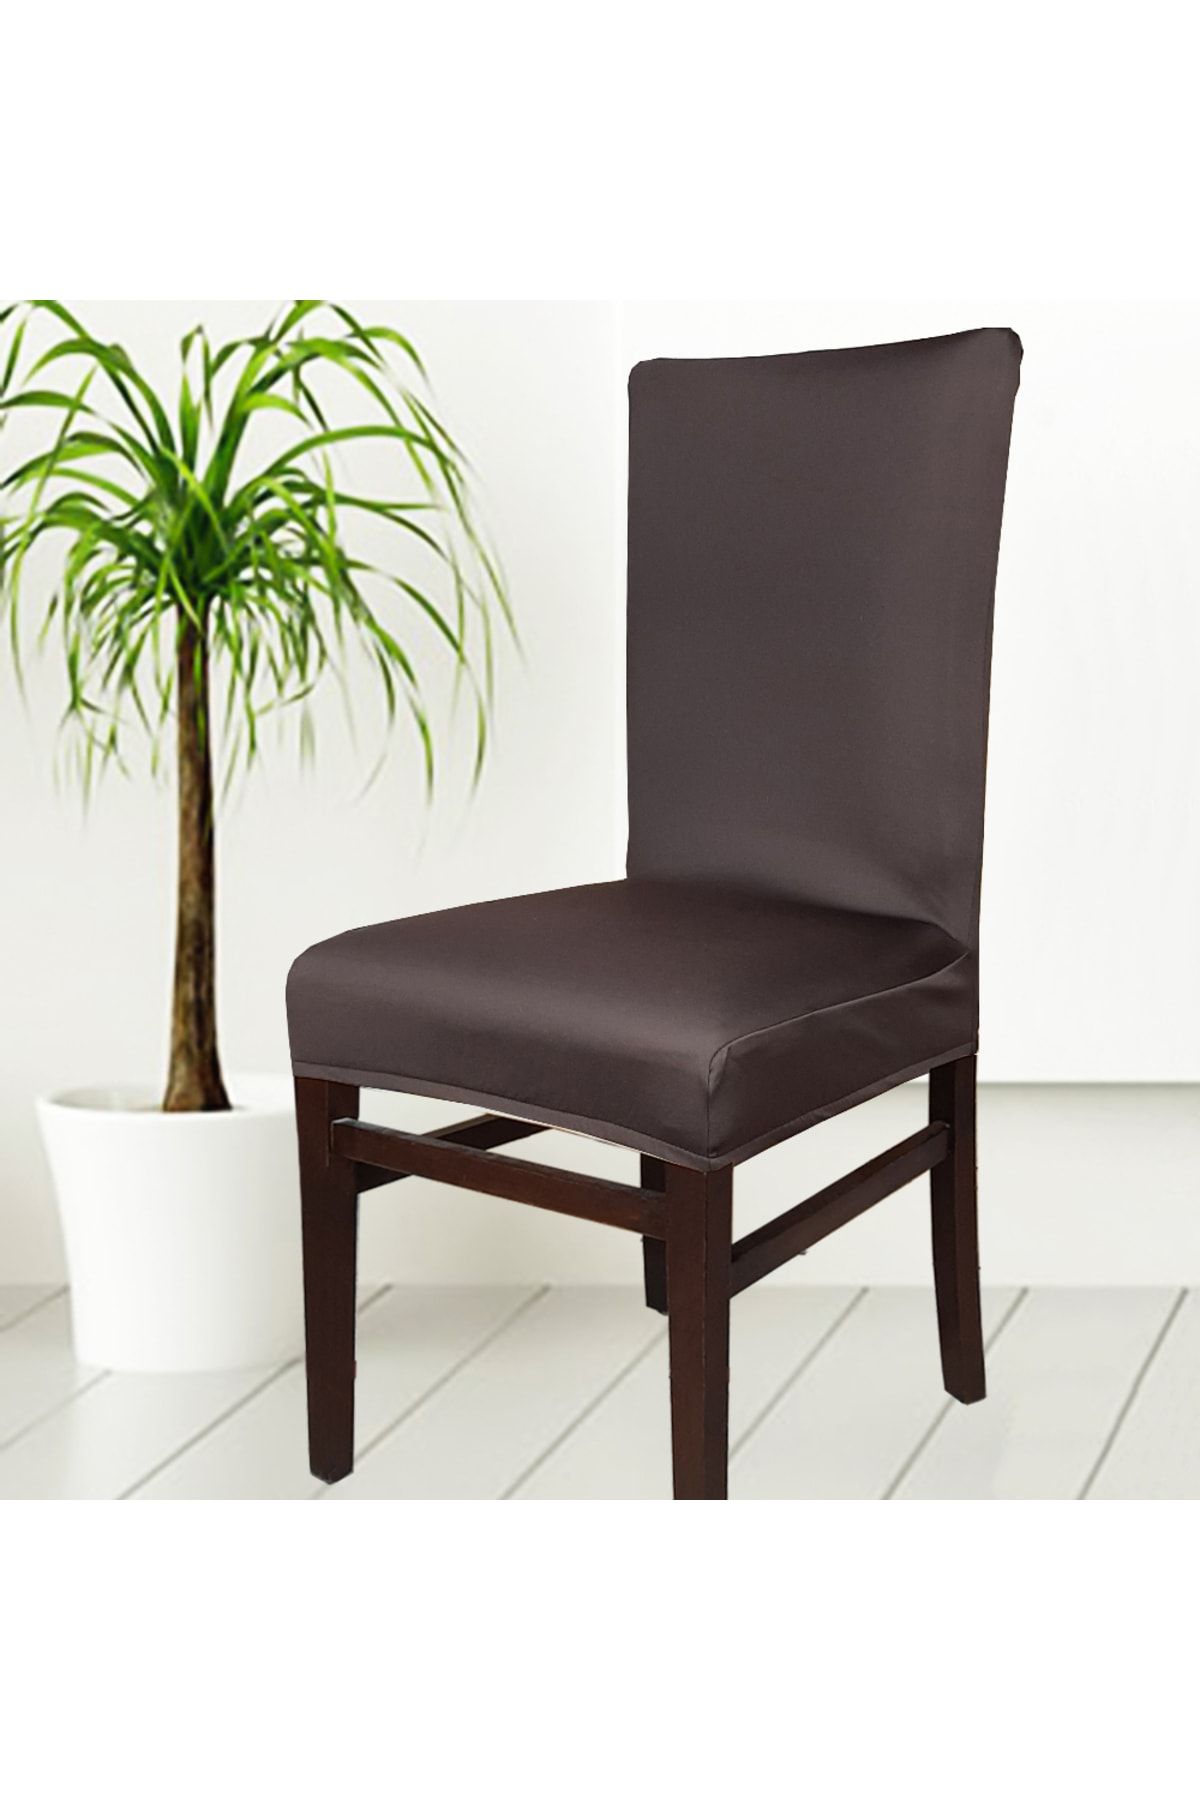 abeltrade Sandalye Kılıfı.kaliteli Mikro Kumaş Koyu Kahve Rengi.standart Kare Sandalyelere Uygun. 6 Li